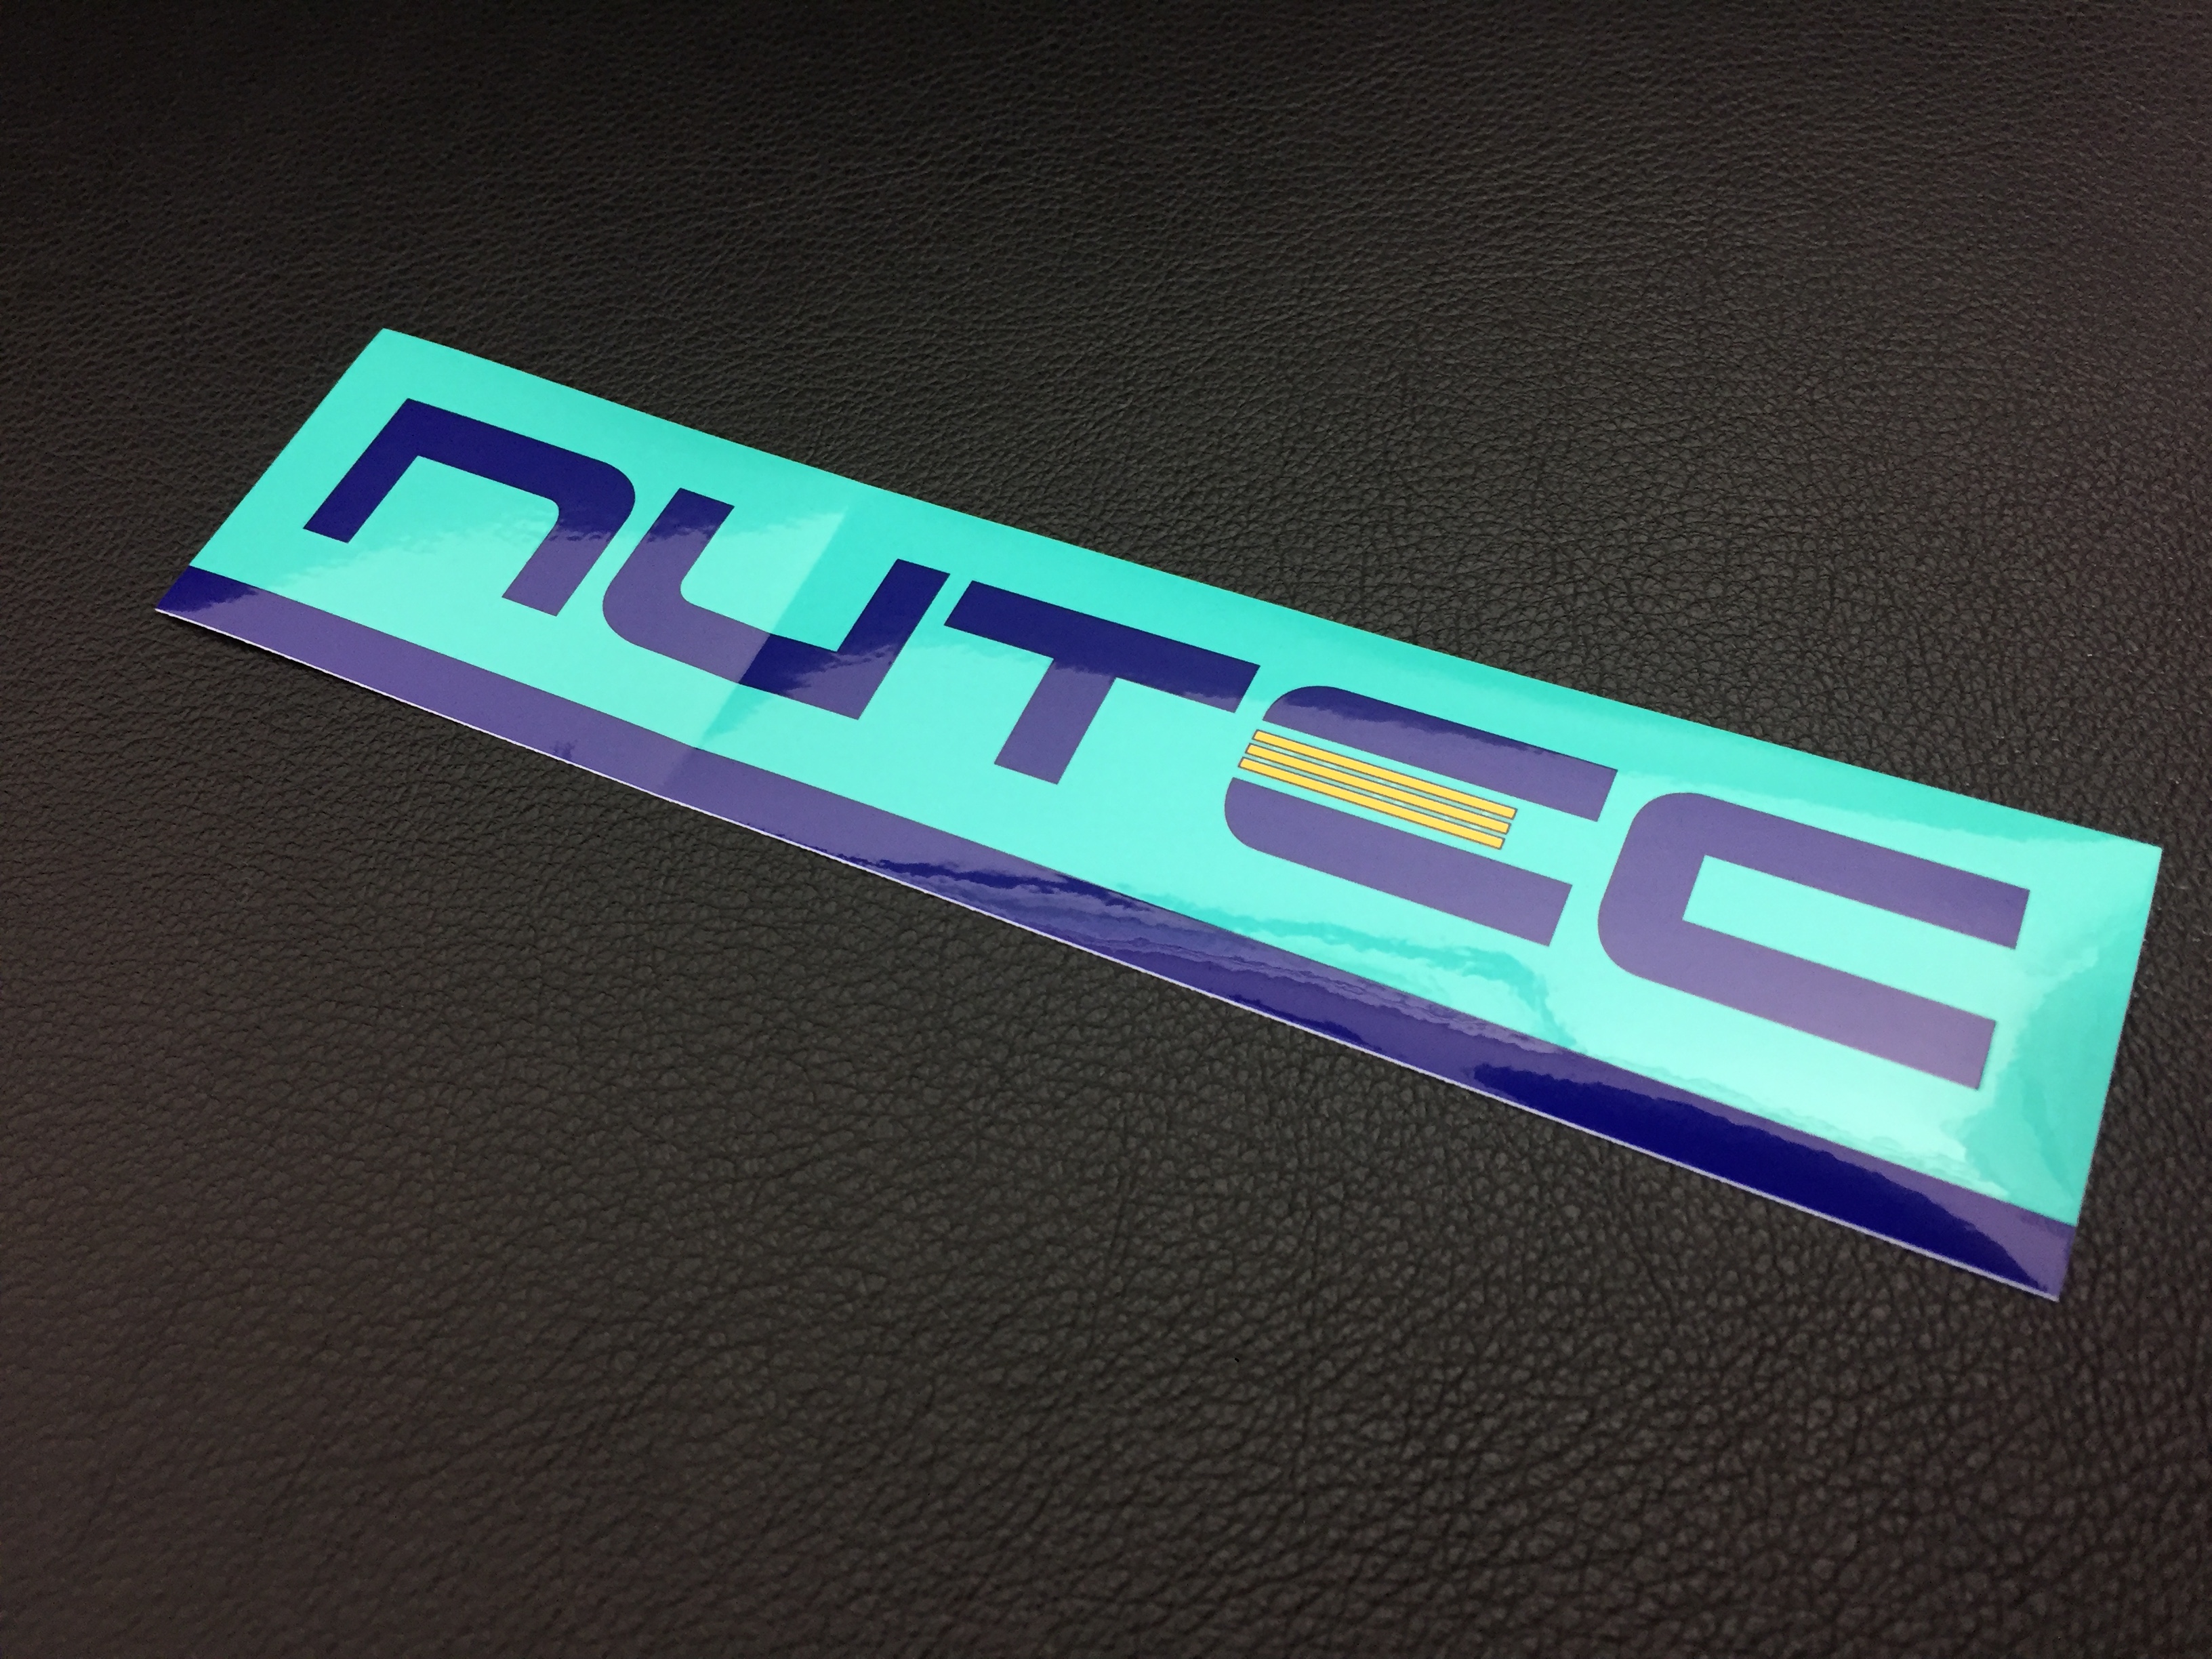 ・NUTEC(ニューテック)製品店頭で販売中！是非ご体感くださいませ。